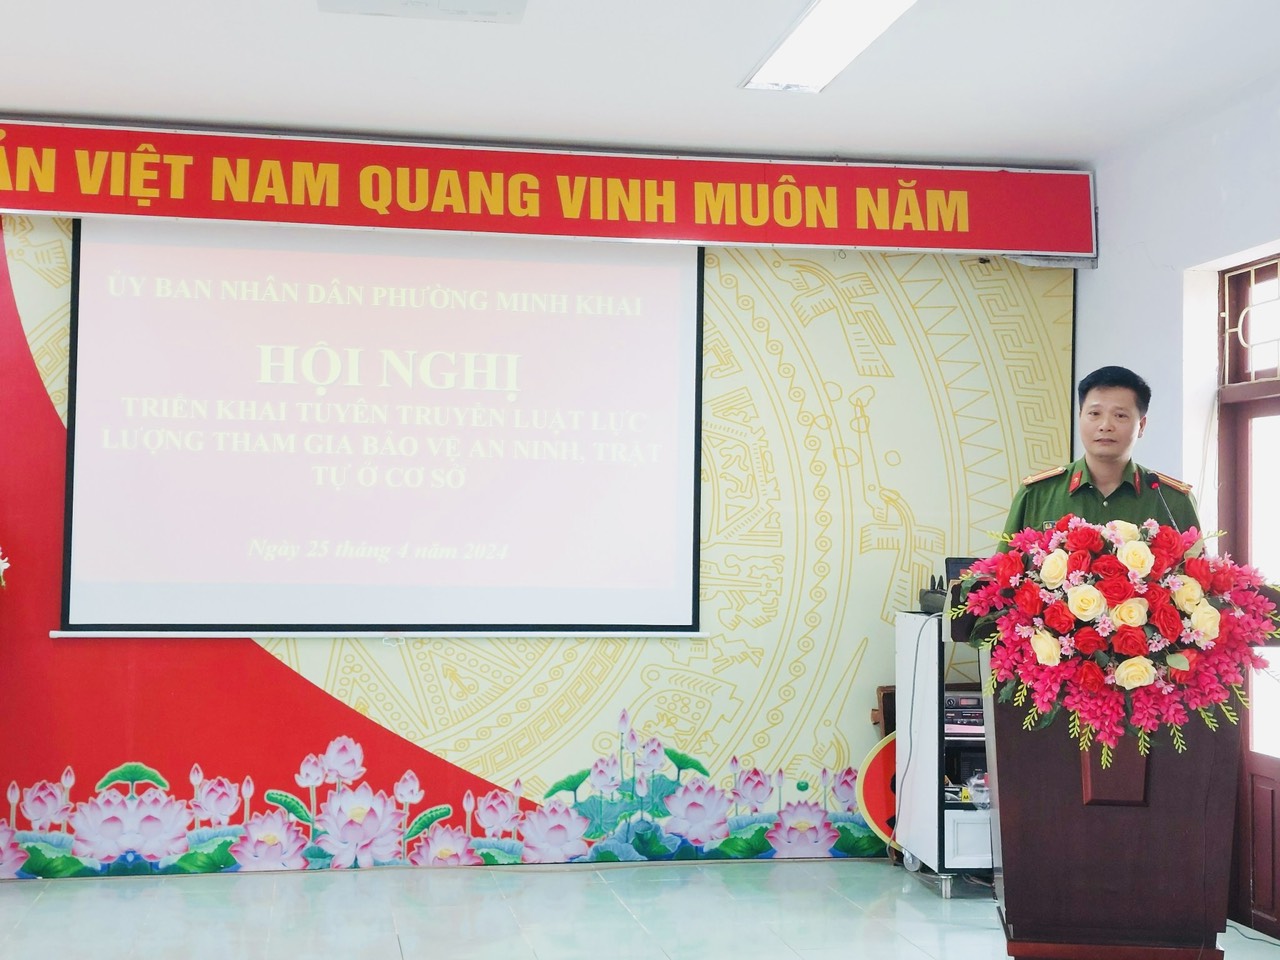 Phường Minh Khai tổ chức Hội nghị triển khai tuyên truyền Luật Lực lượng bảo vệ an ninh, trật tự ở cơ sở